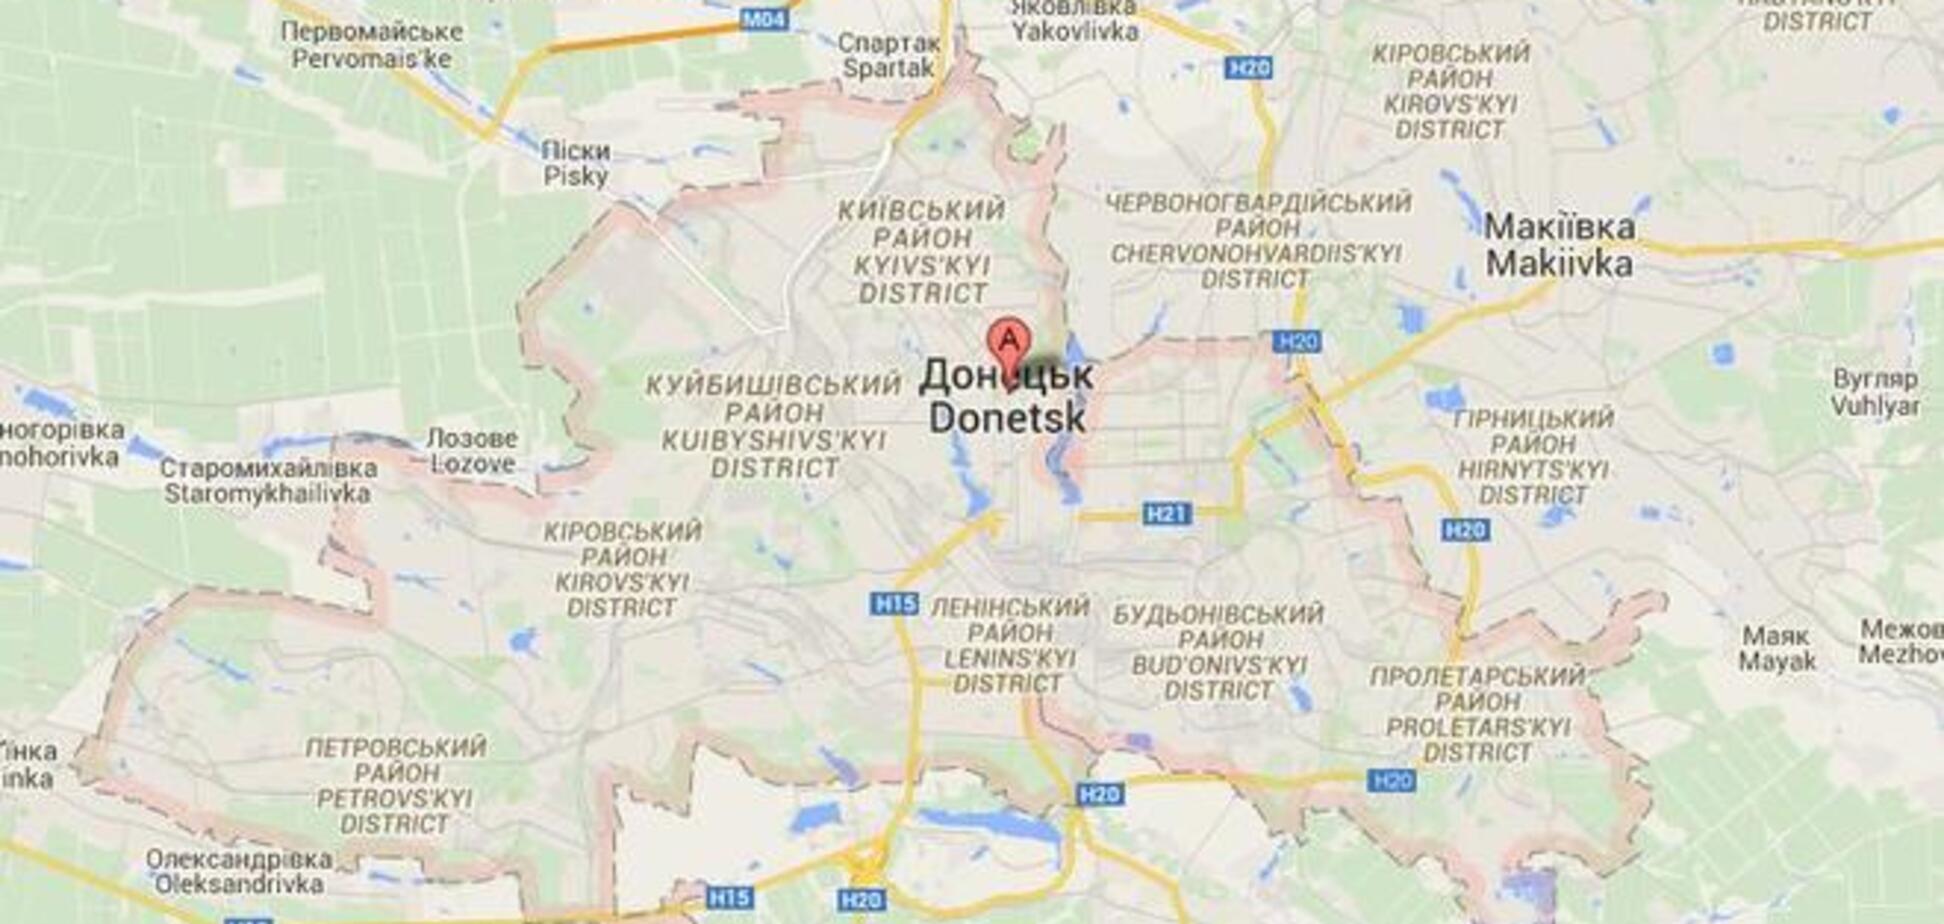 У прес-центрі АТО розповіли про танковий бій в Донецьку